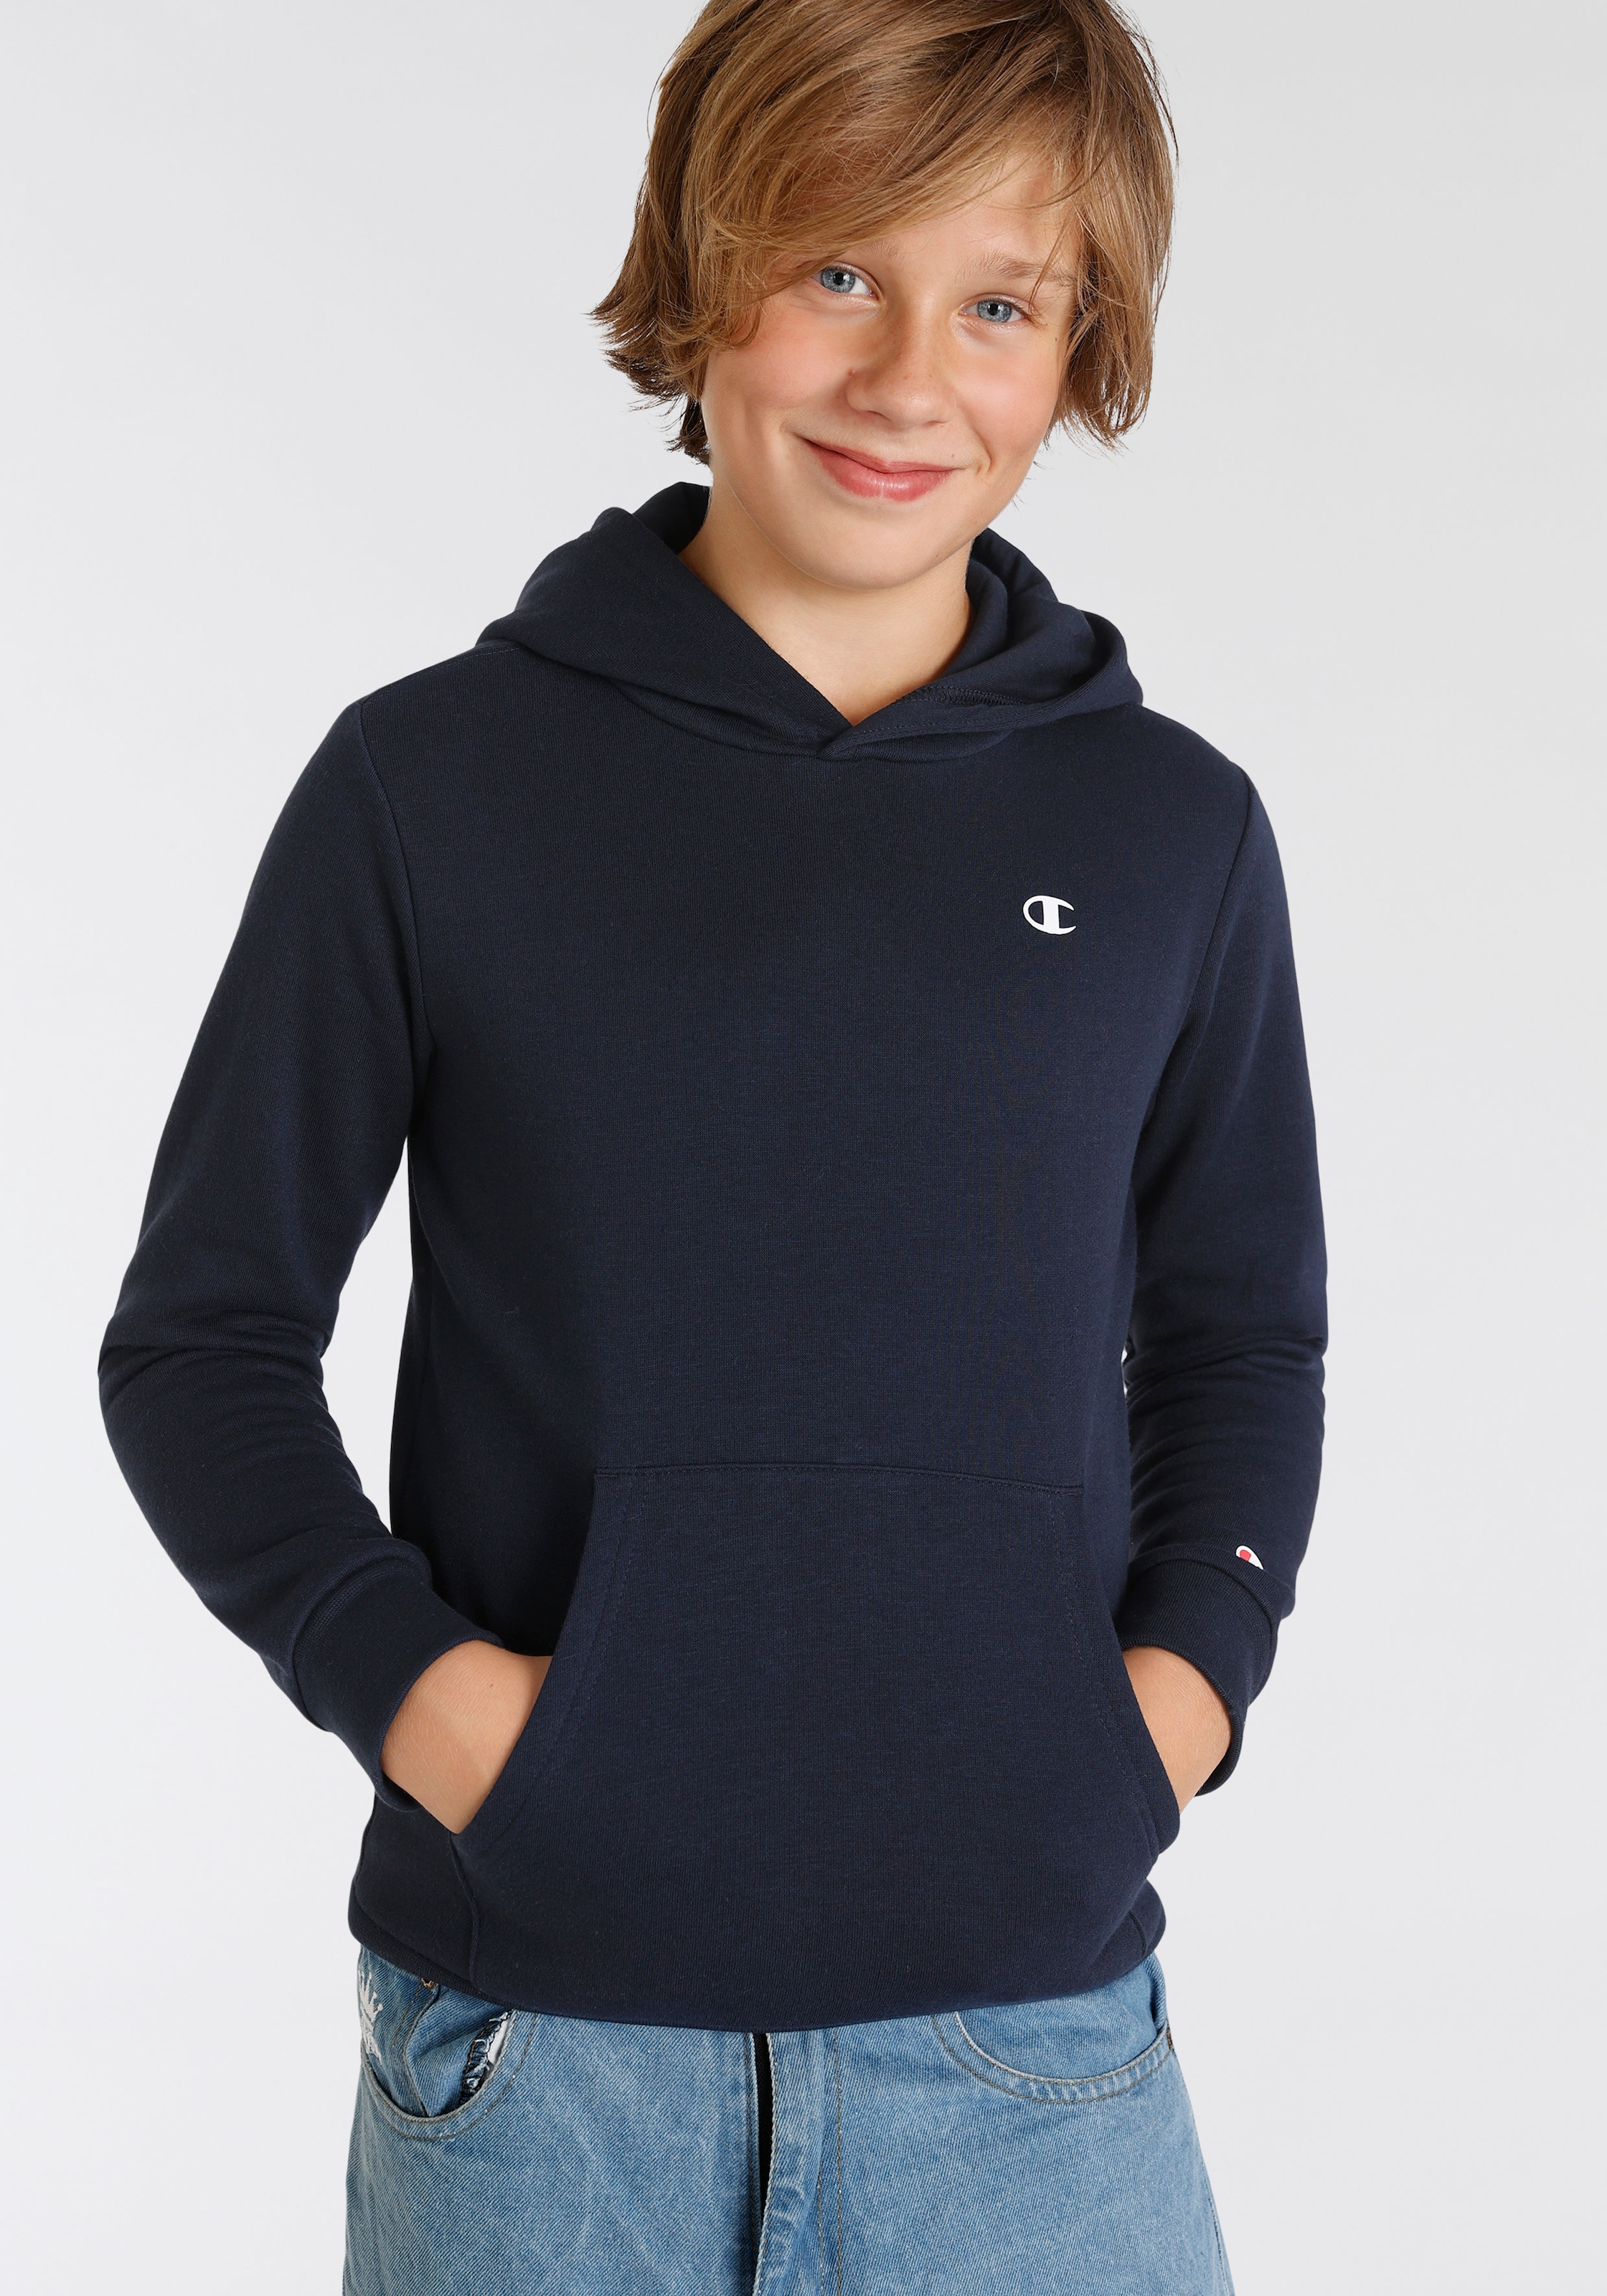 Hooded »Basic - online kaufen Kinder« Sweatshirt Sweatshirt für Champion